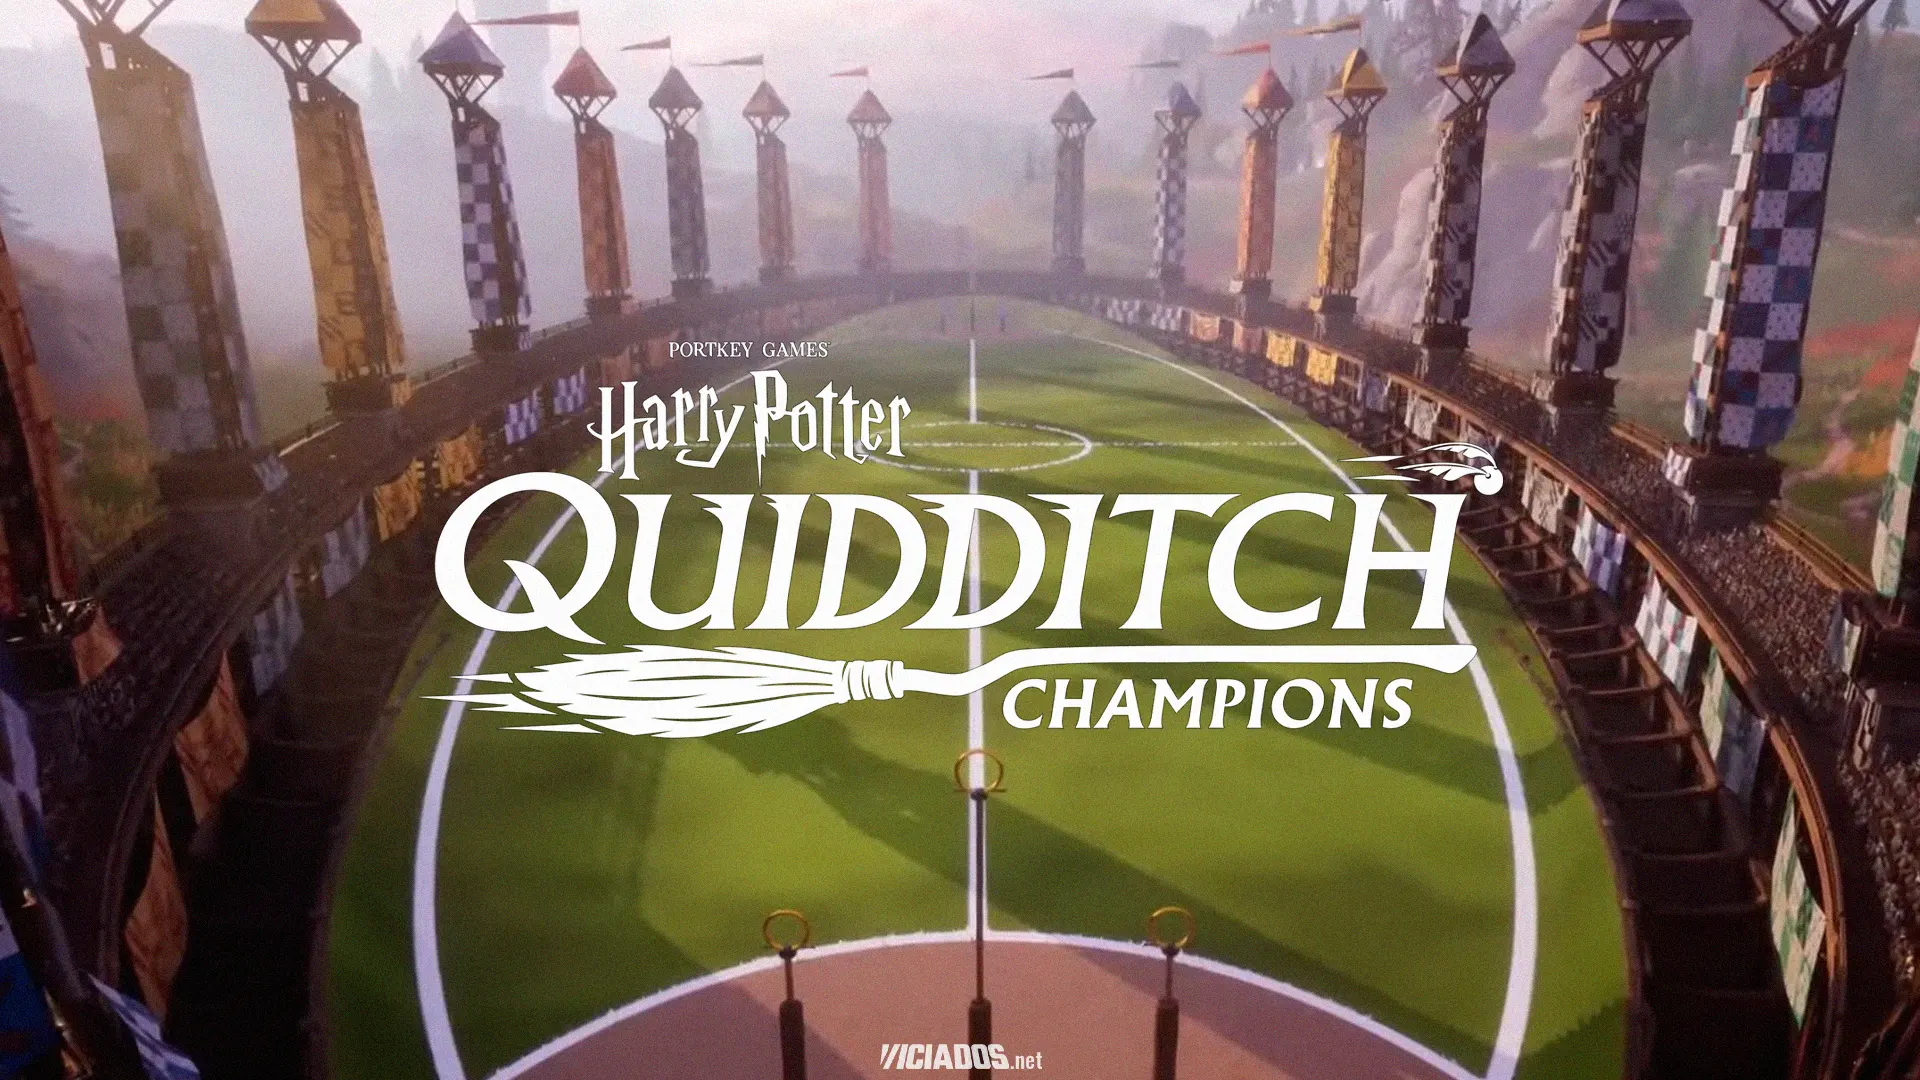 Voe alto e marque gol no novo Harry Potter: Campeões do Quadribol; Saiba como participar dos testes! 2023 Viciados